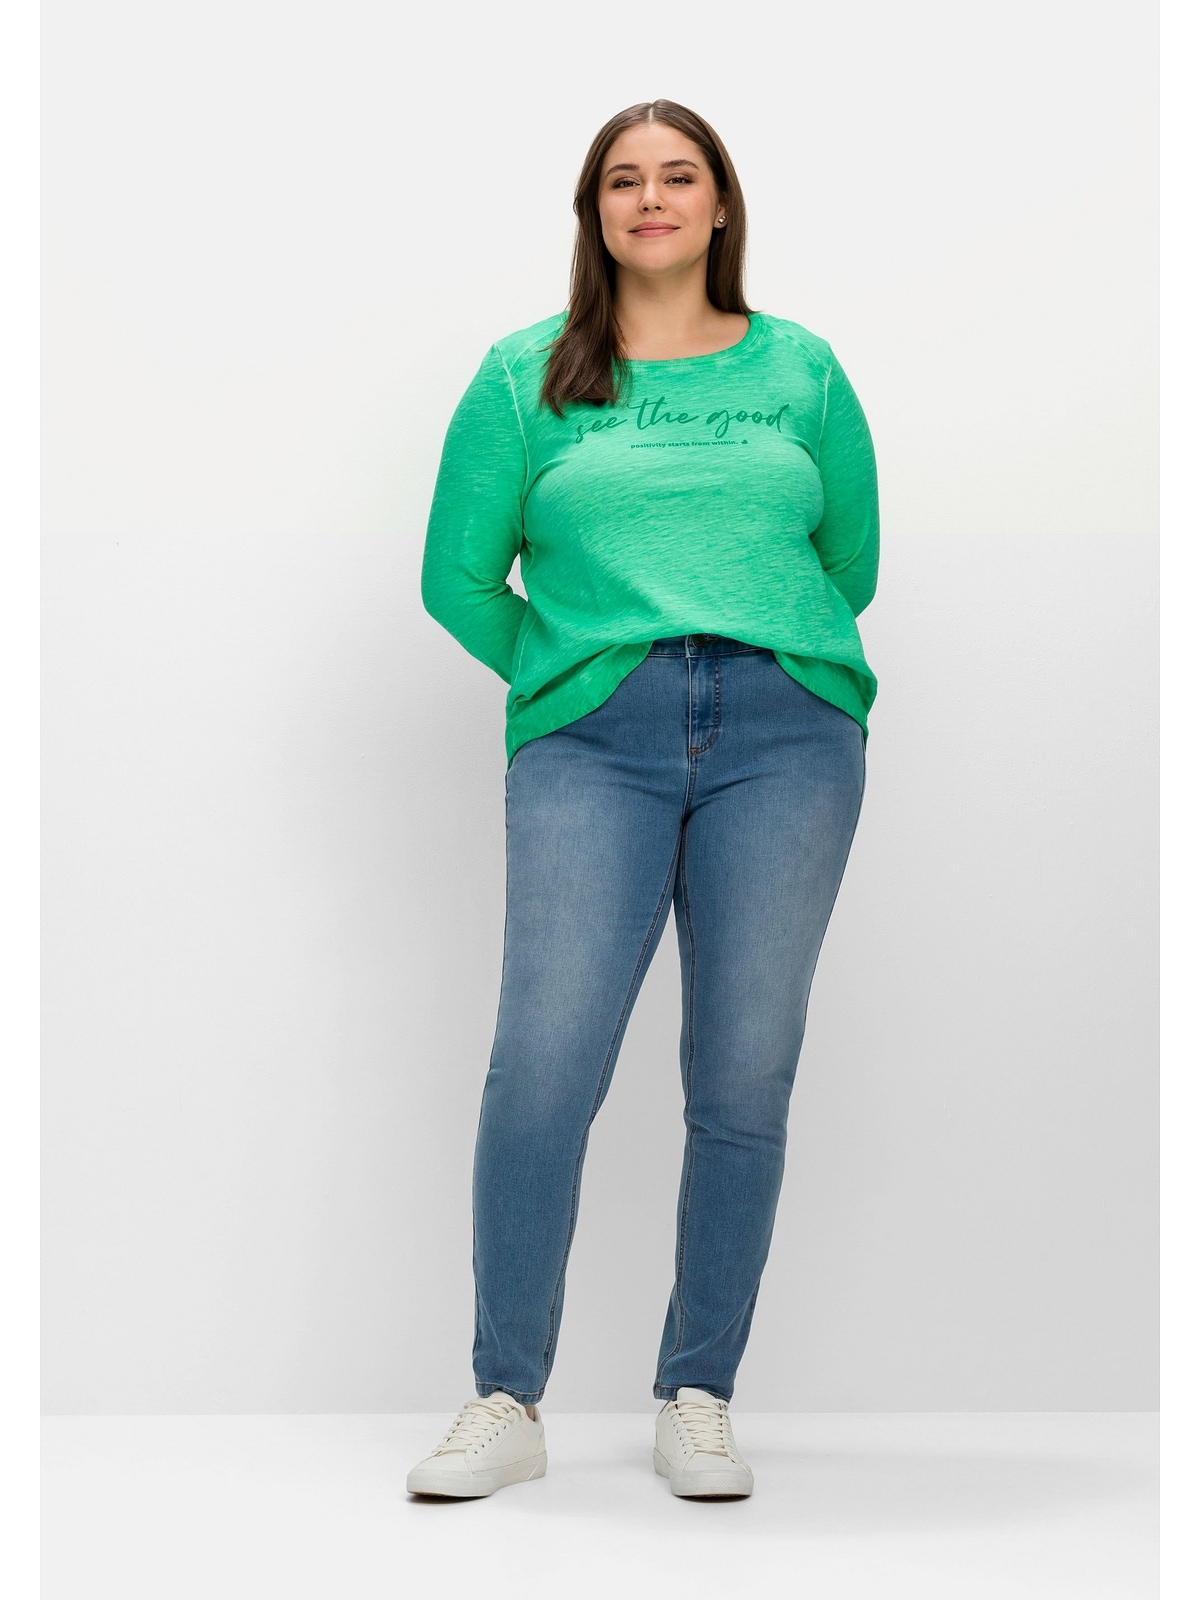 sehr | BAUR mehr und schmale »Große kaufen Bauch Größen«, für für Sheego Beine Stretch-Jeans